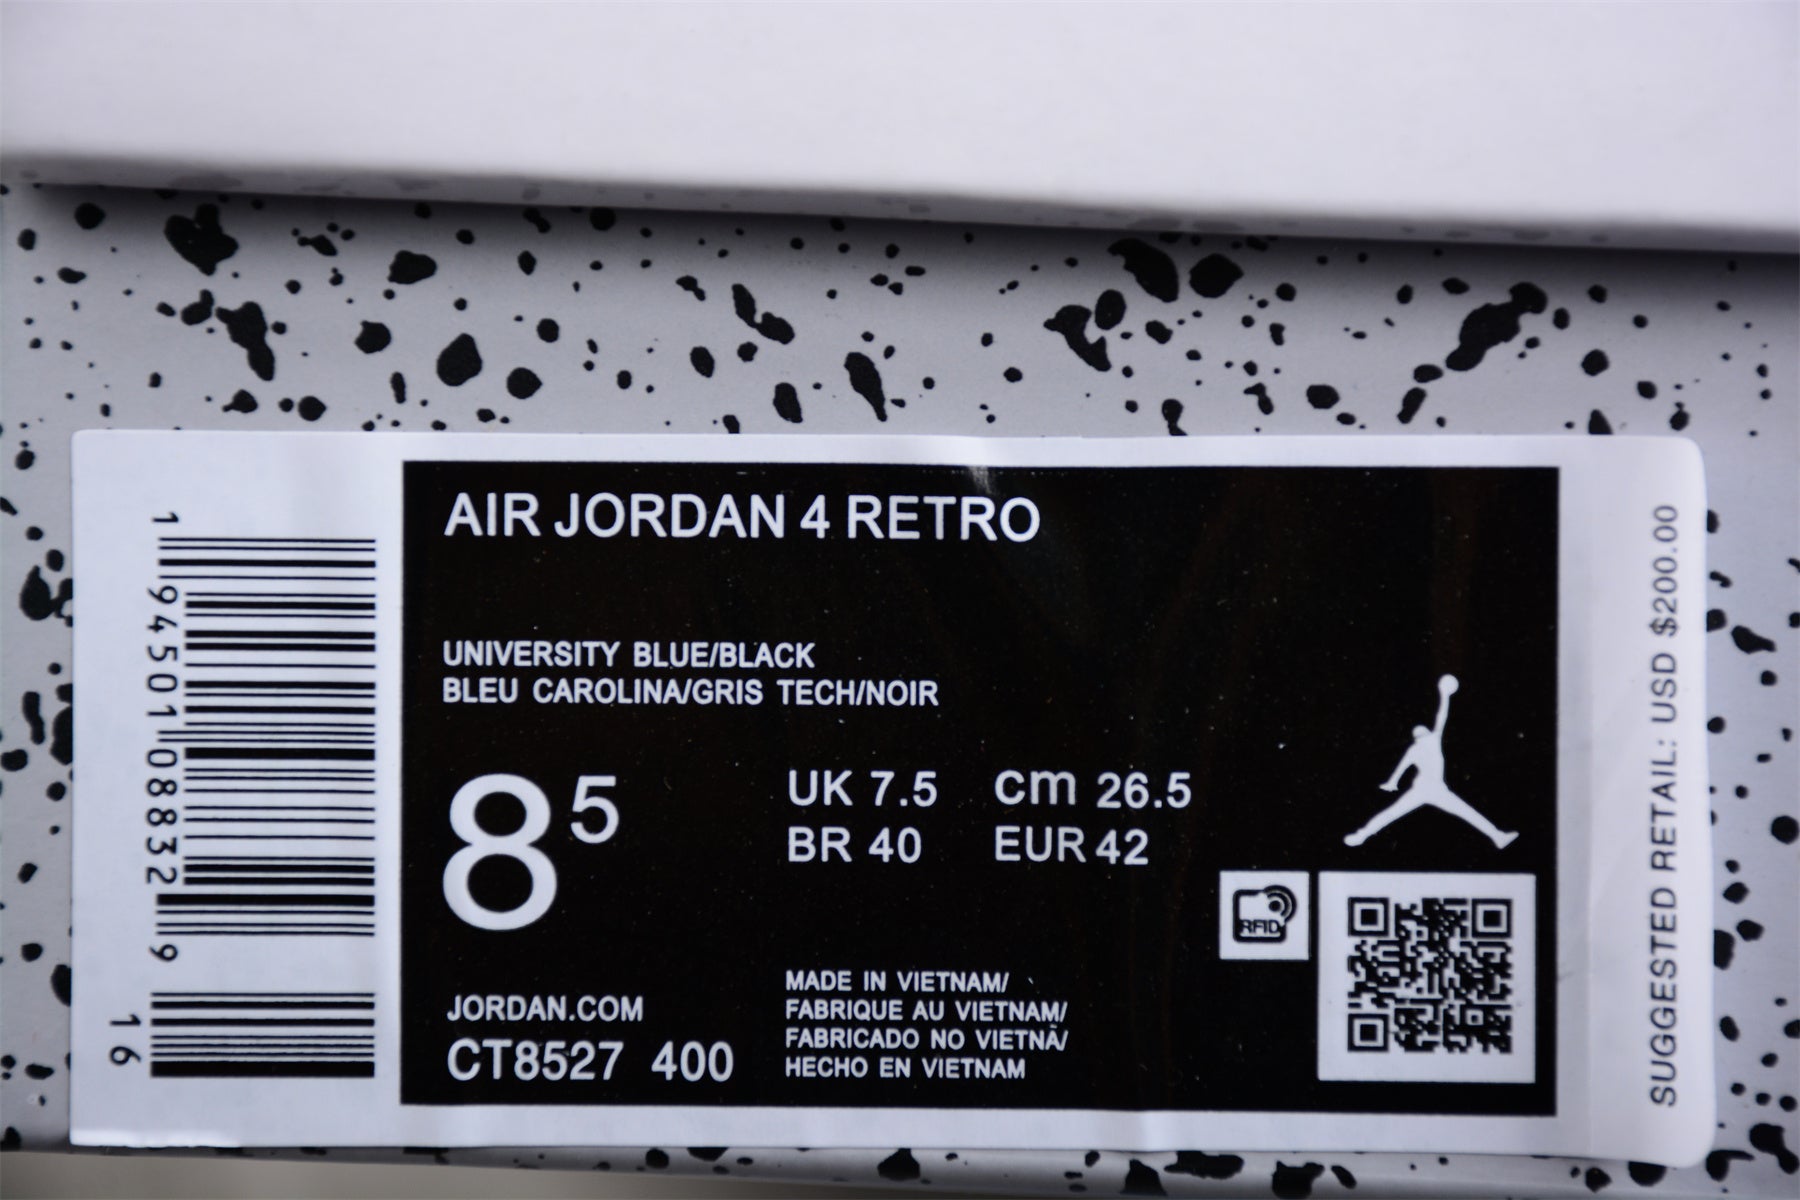 Air Jordan 4 Retro "UNIVERSITY BLUE" CT8527 400